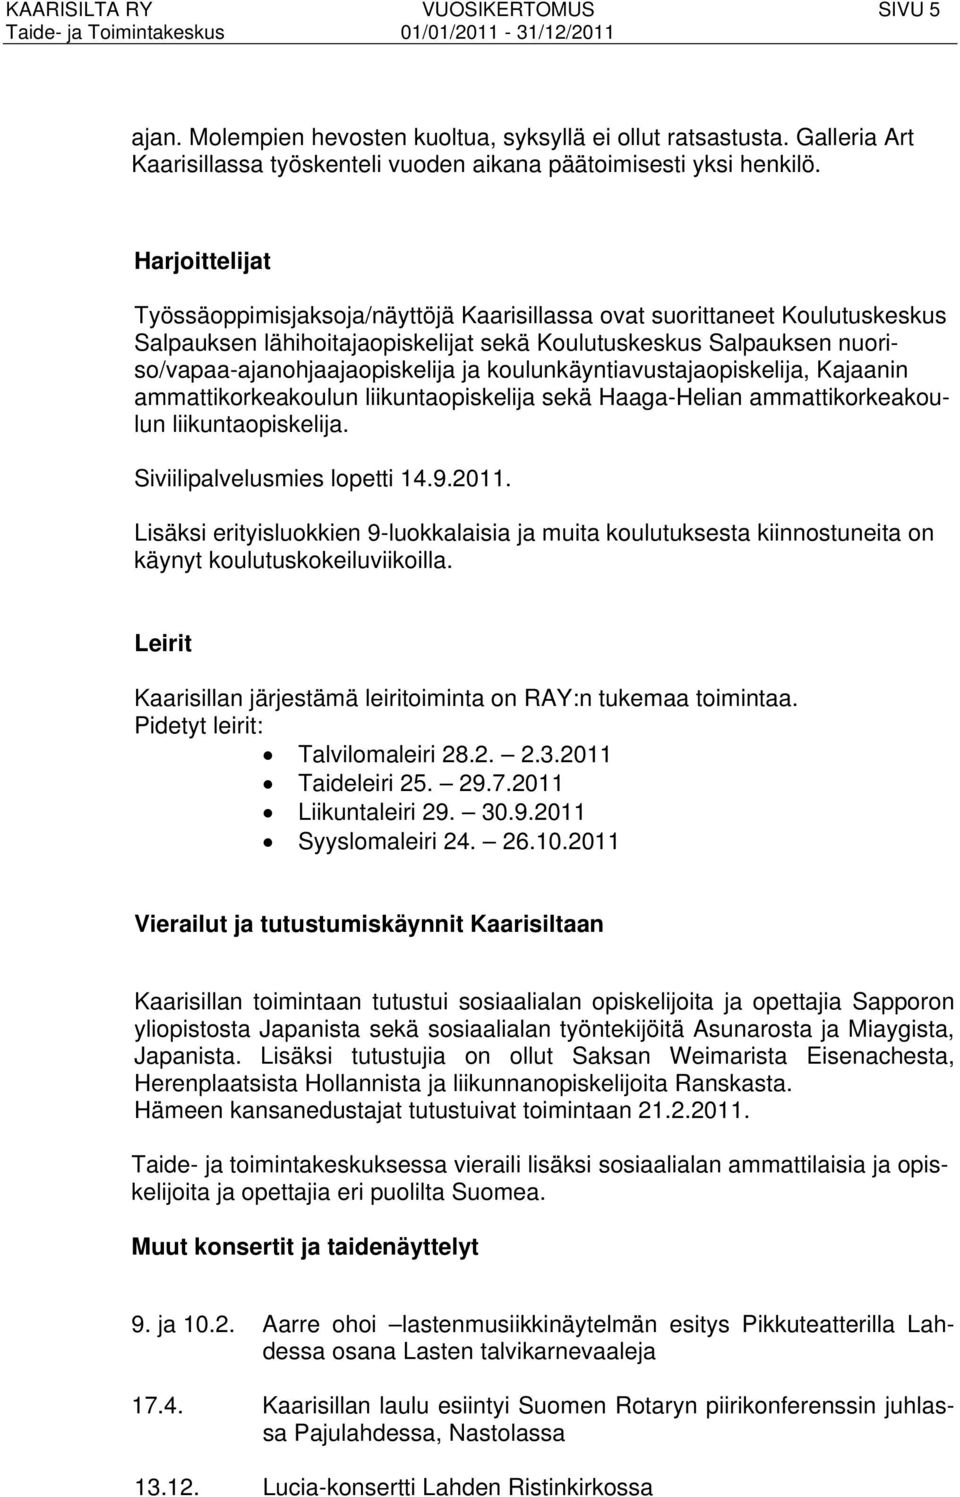 koulunkäyntiavustajaopiskelija, Kajaanin ammattikorkeakoulun liikuntaopiskelija sekä Haaga-Helian ammattikorkeakoulun liikuntaopiskelija. Siviilipalvelusmies lopetti 14.9.2011.